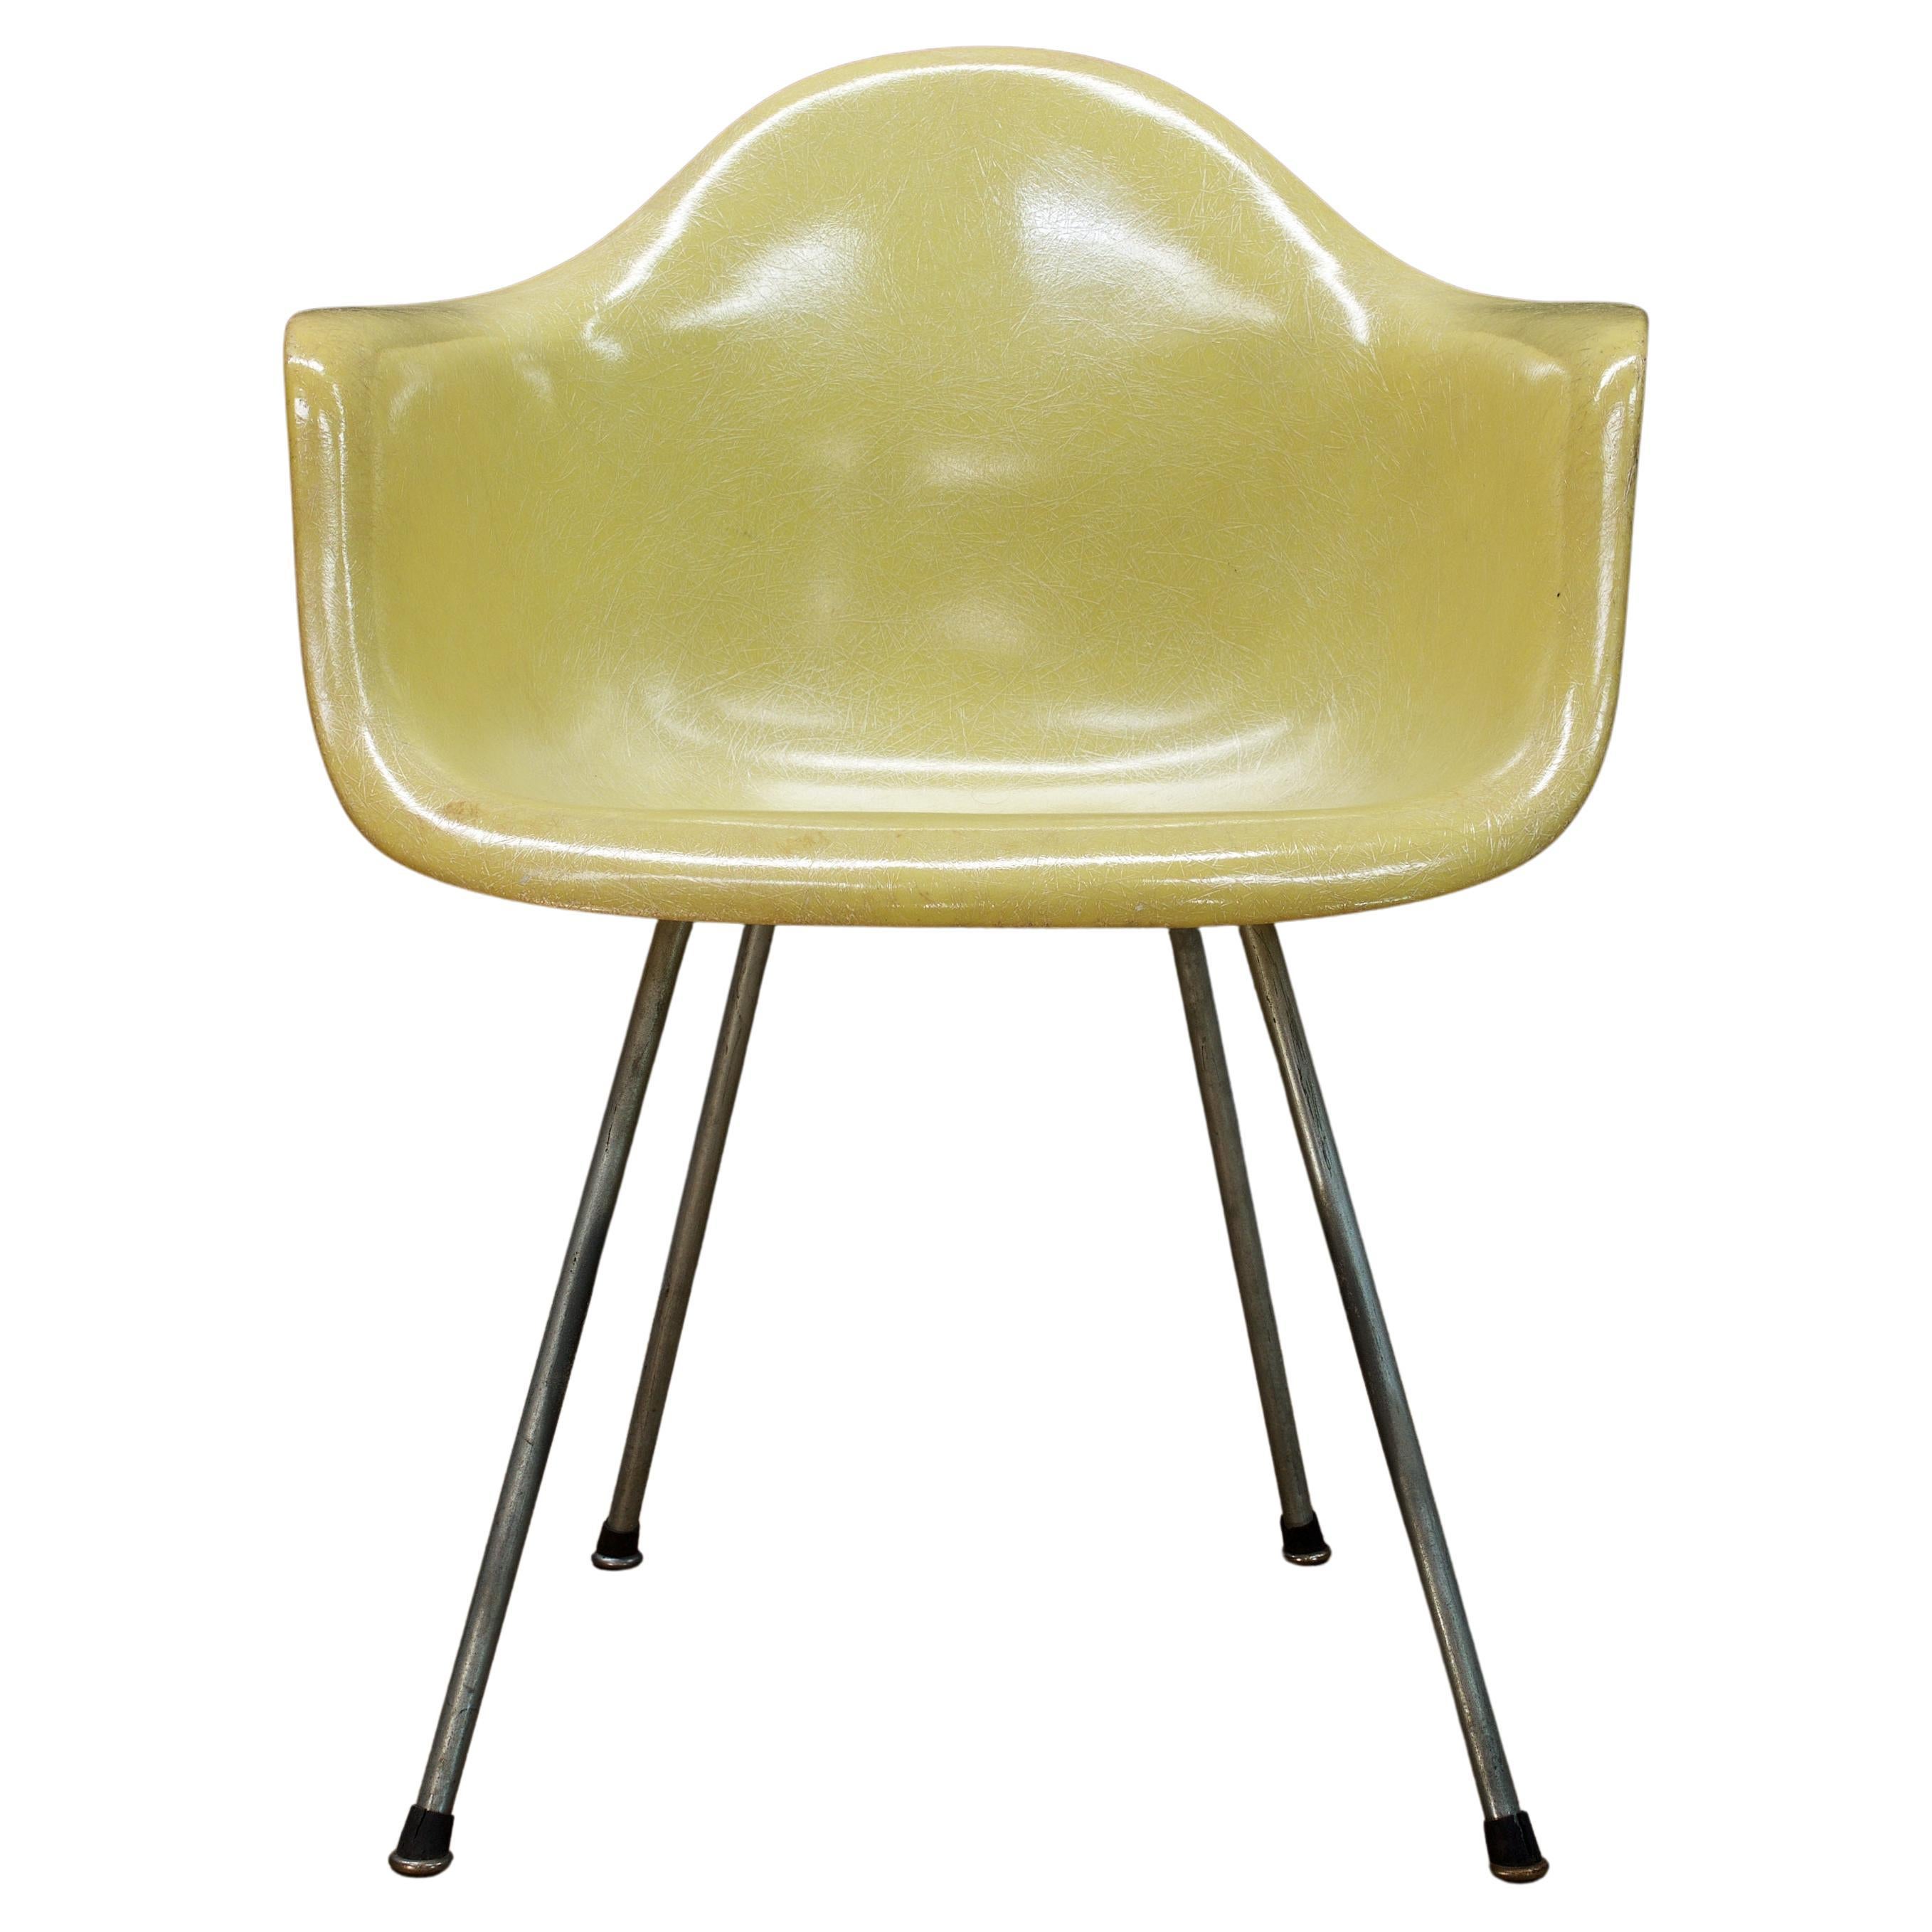 Zitronengelber DAX-Stuhl Charles+Ray Eames Zenith Herman Miller, 1950er Jahre